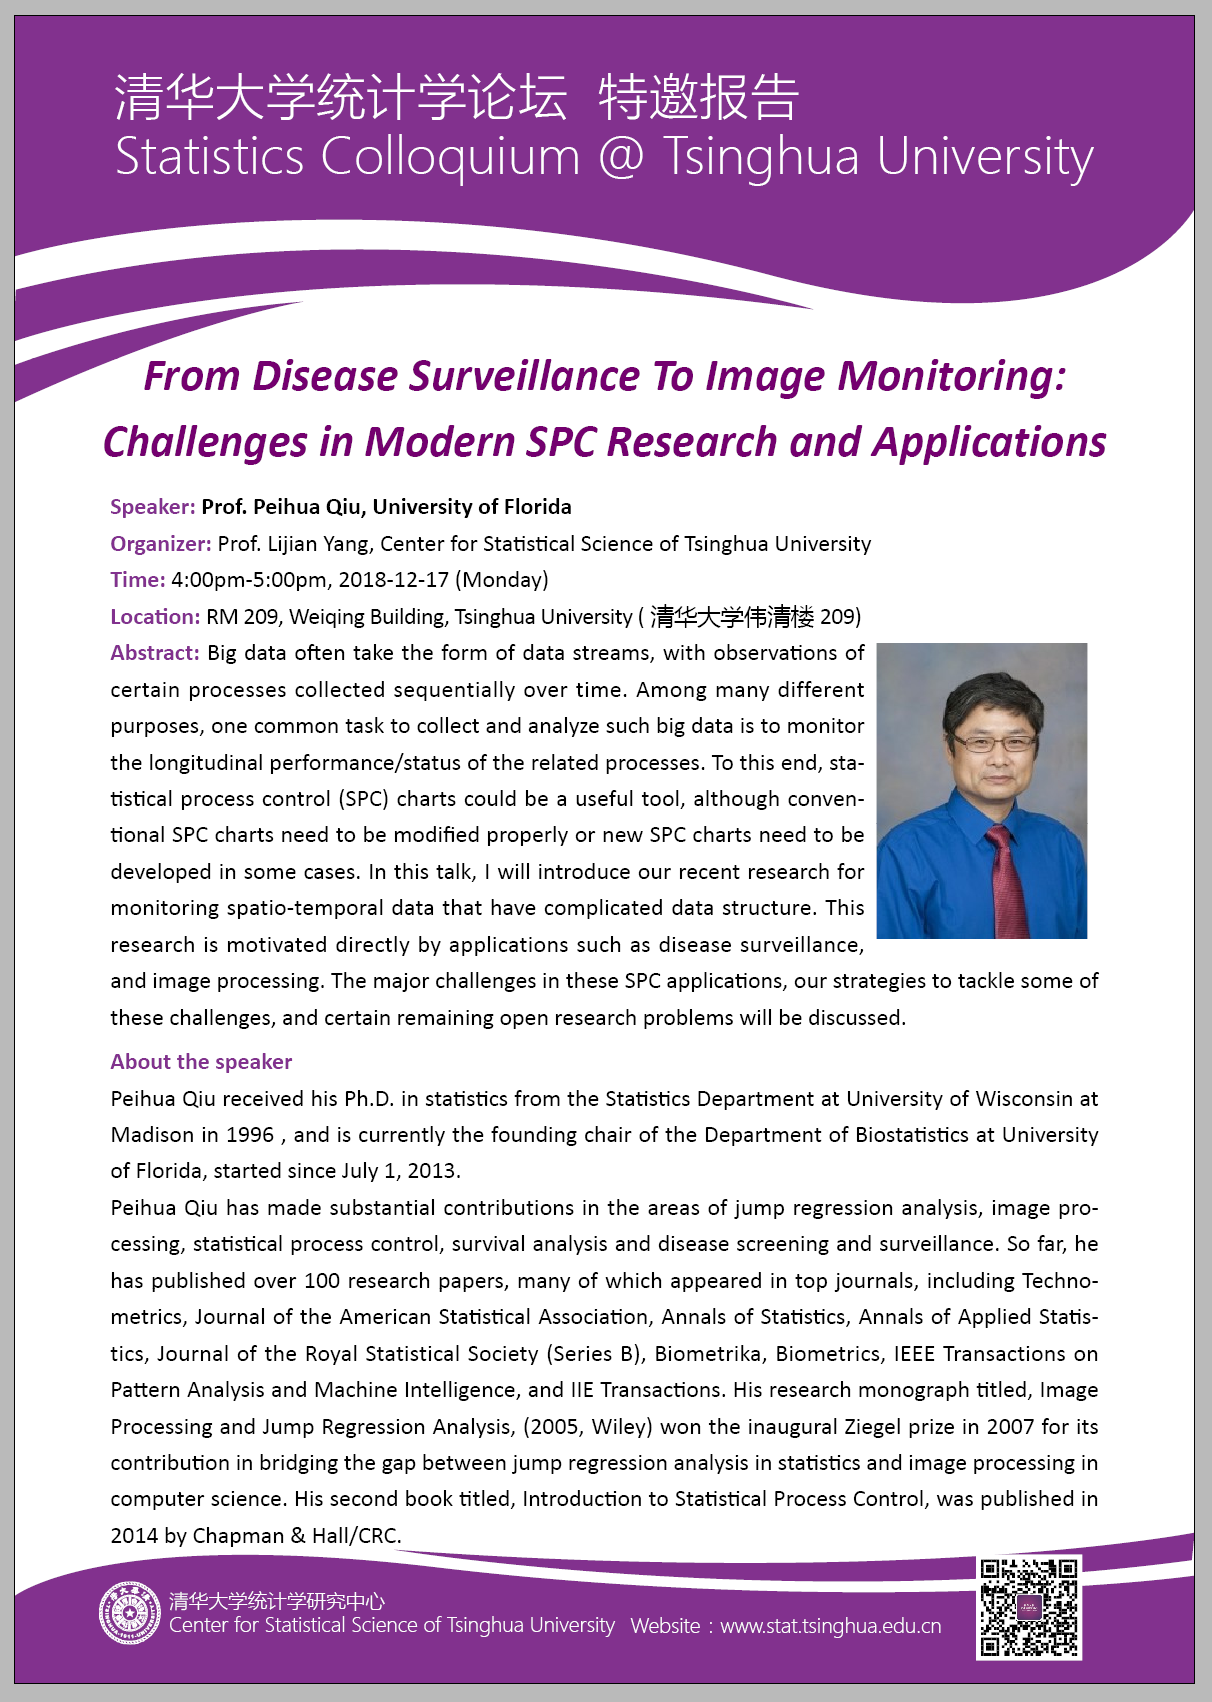 【统计学论坛】From Disease Surveillance to Image Monitoring: Challenges in Modern SPC Research and Applications